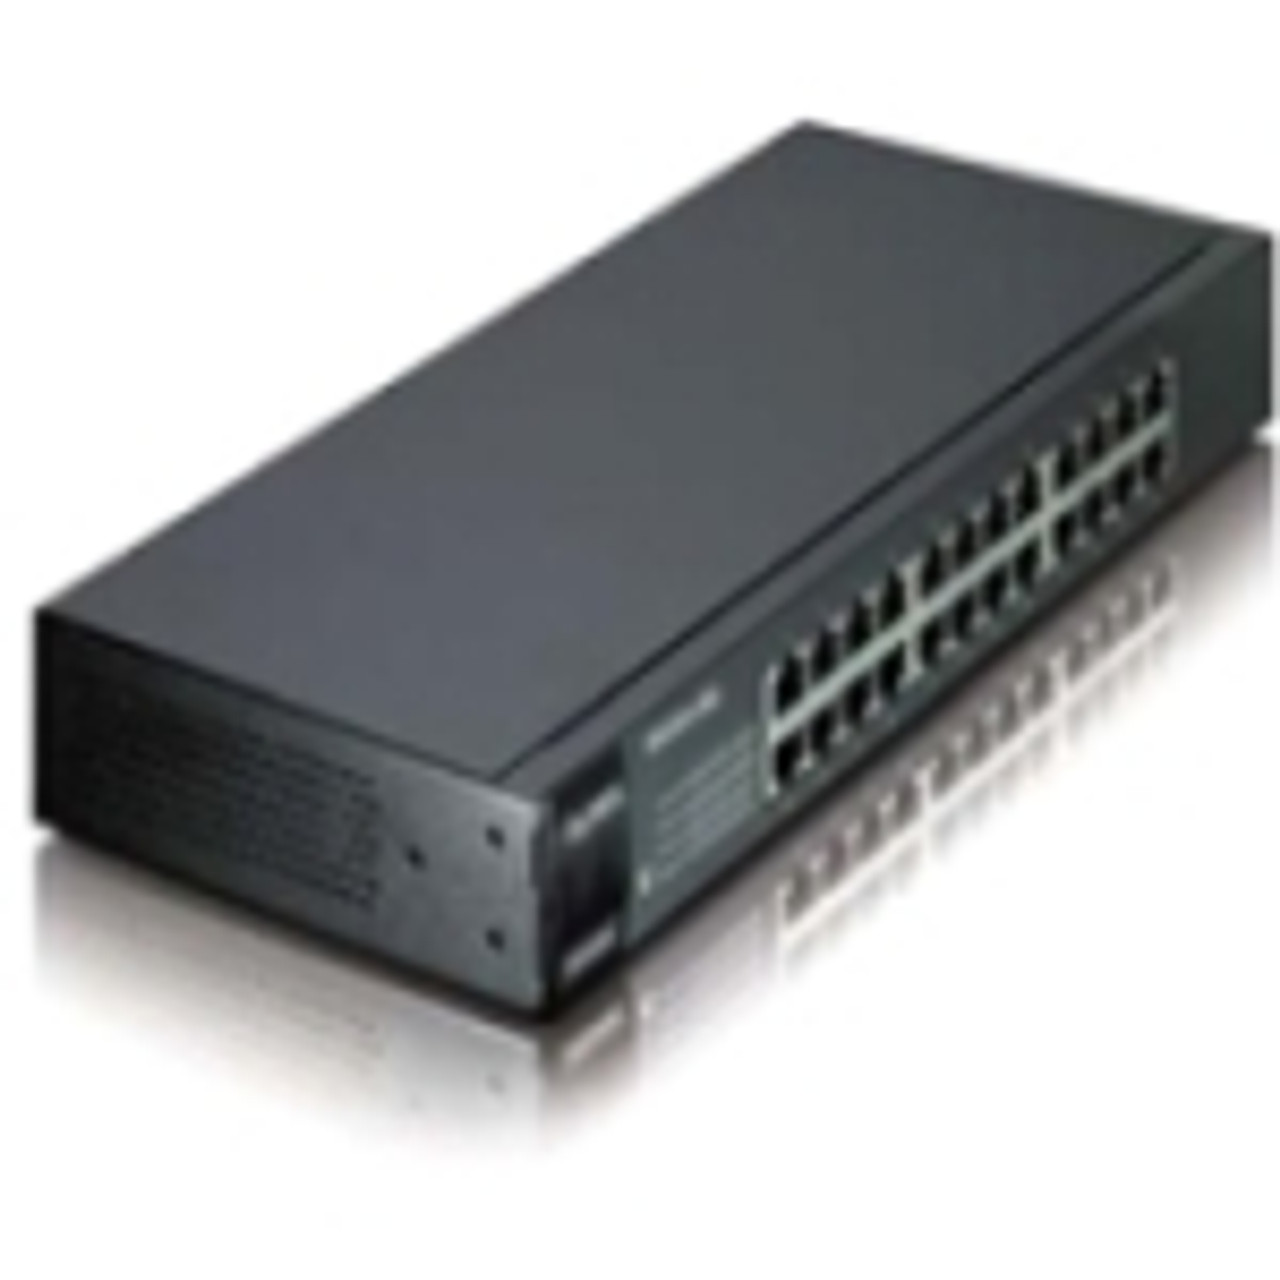 ES1100-24E Zyxel ES1100-24E Ethernet Switch 24 Ports 24 x RJ-45 10/100Base-TX (Refurbished)